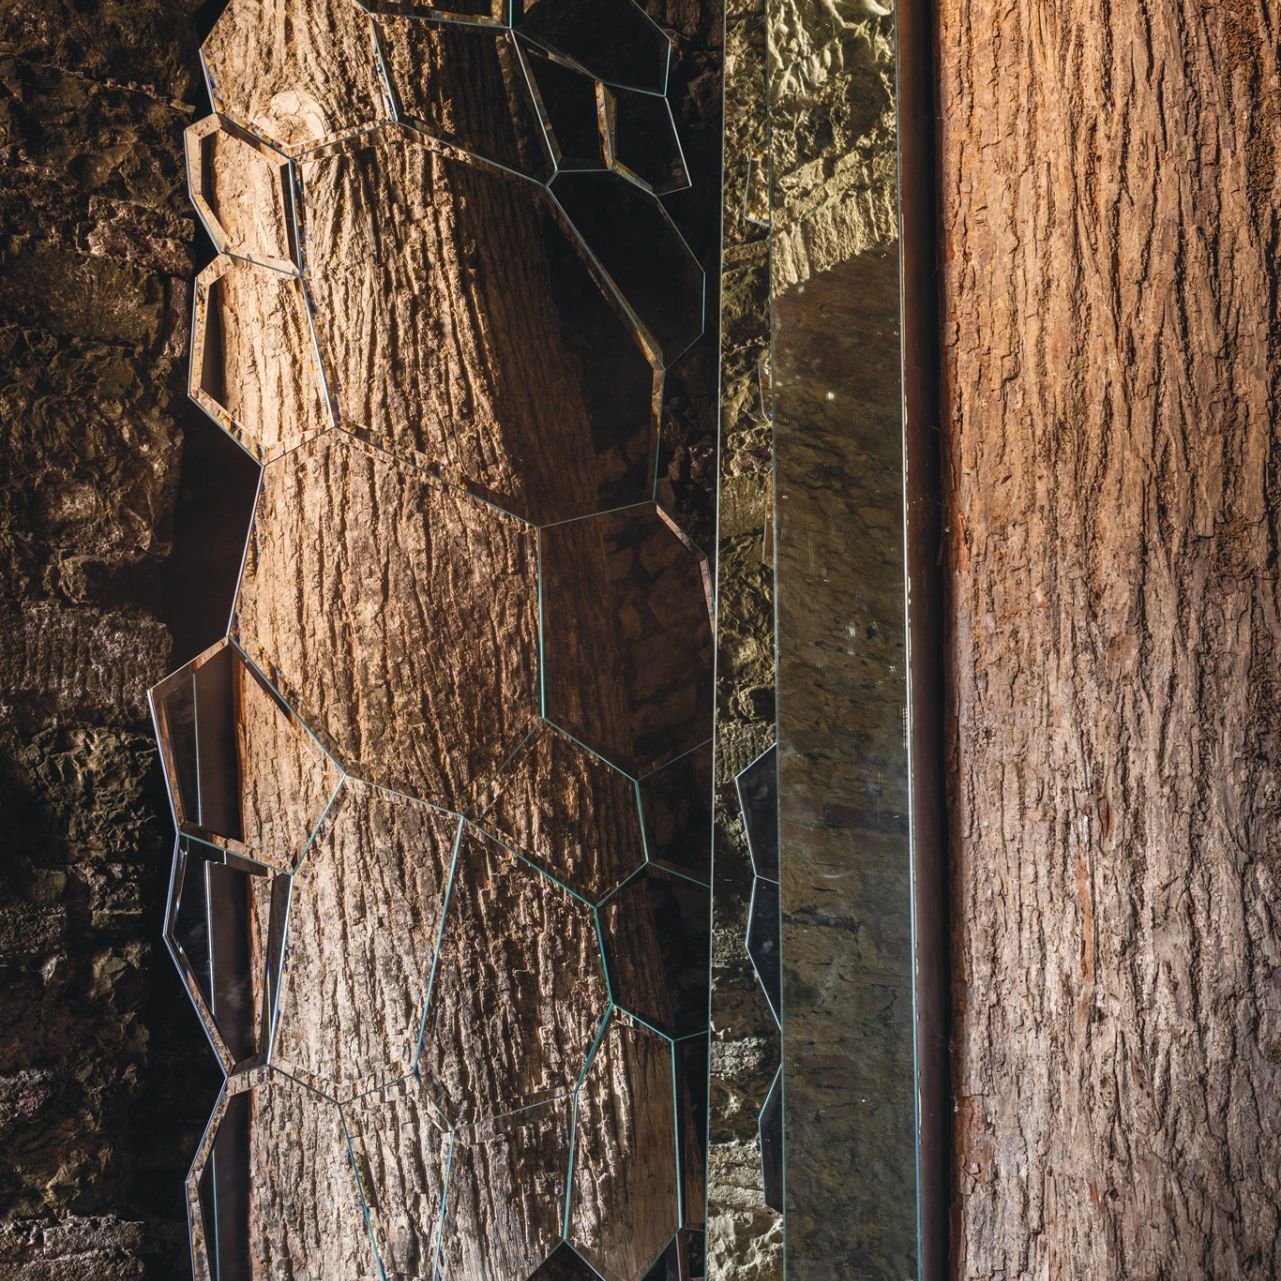   Jubilé . Jeu de réflexions entre le miroir et l'œuvre "The Tree of Ama" de Michelangelo Pistoletto. 